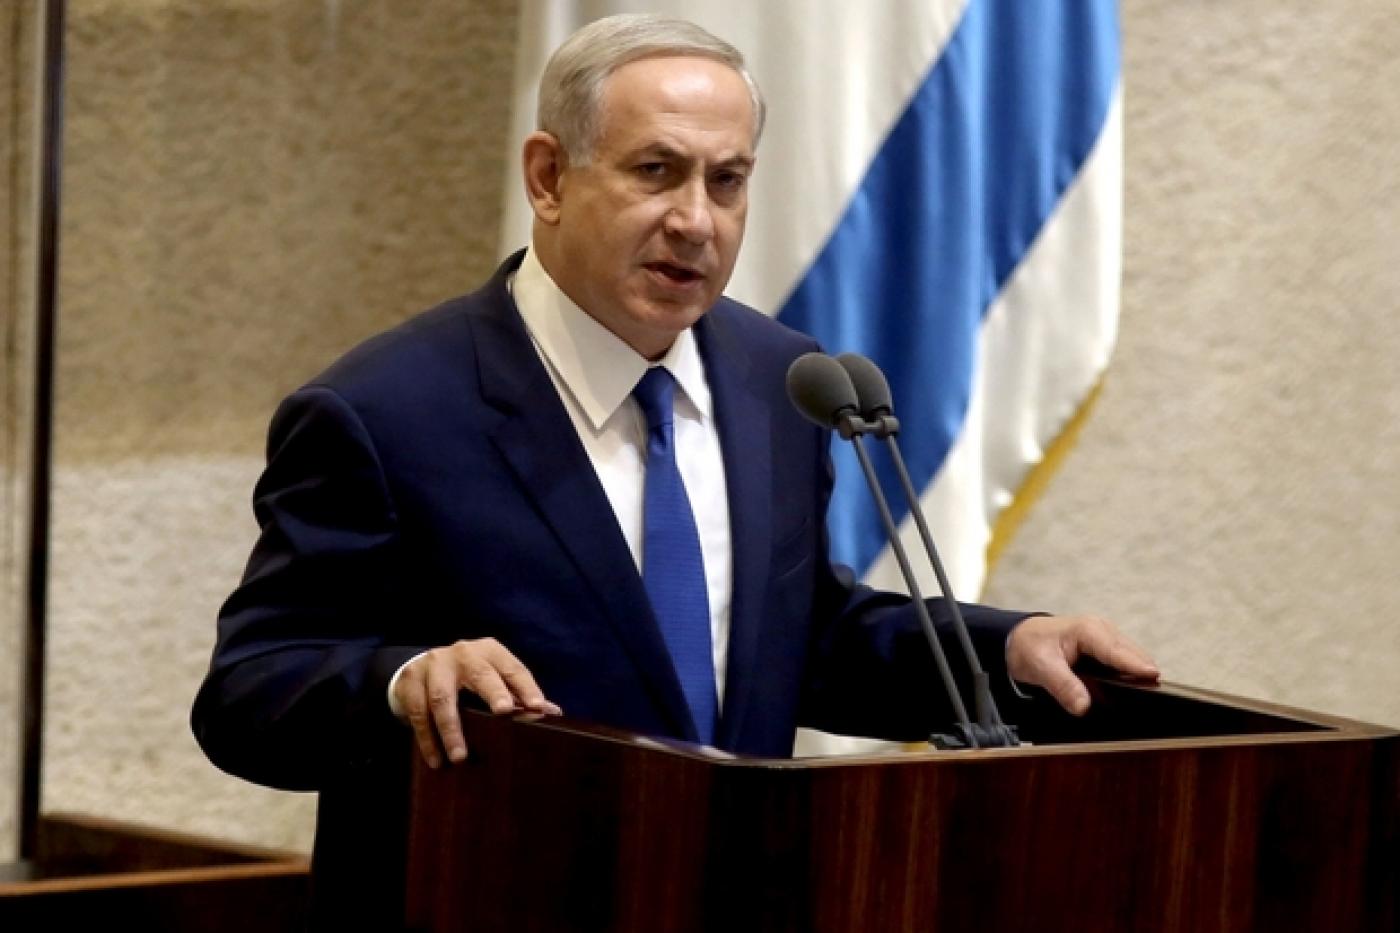 Le Premier ministre israélien Benyamin Netanyahou prononce un discours à la Knesset, en octobre 2015 (AFP)